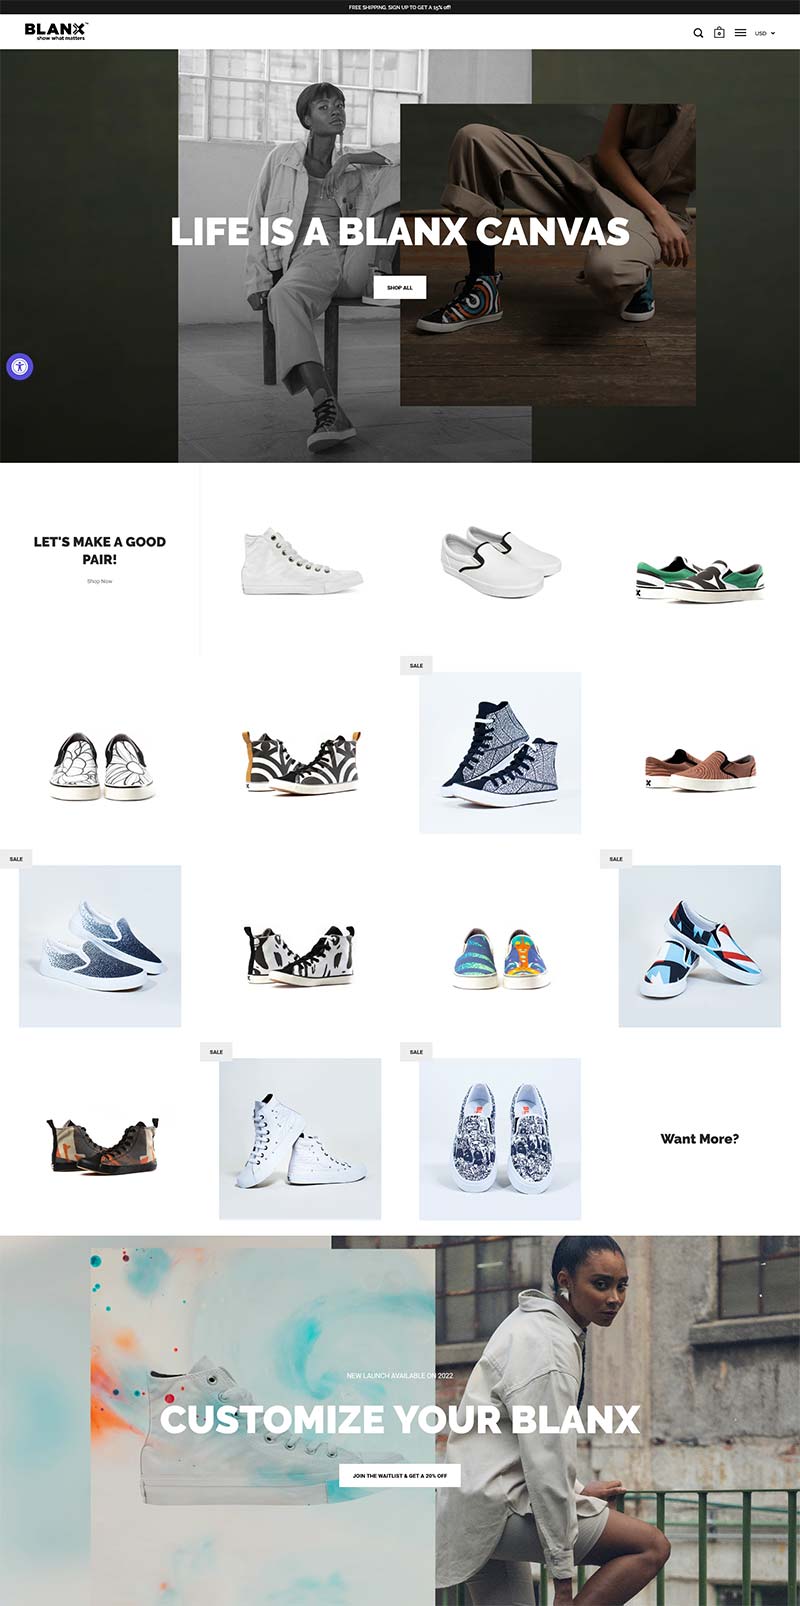 BLANX 美国运动女鞋品牌购物网站